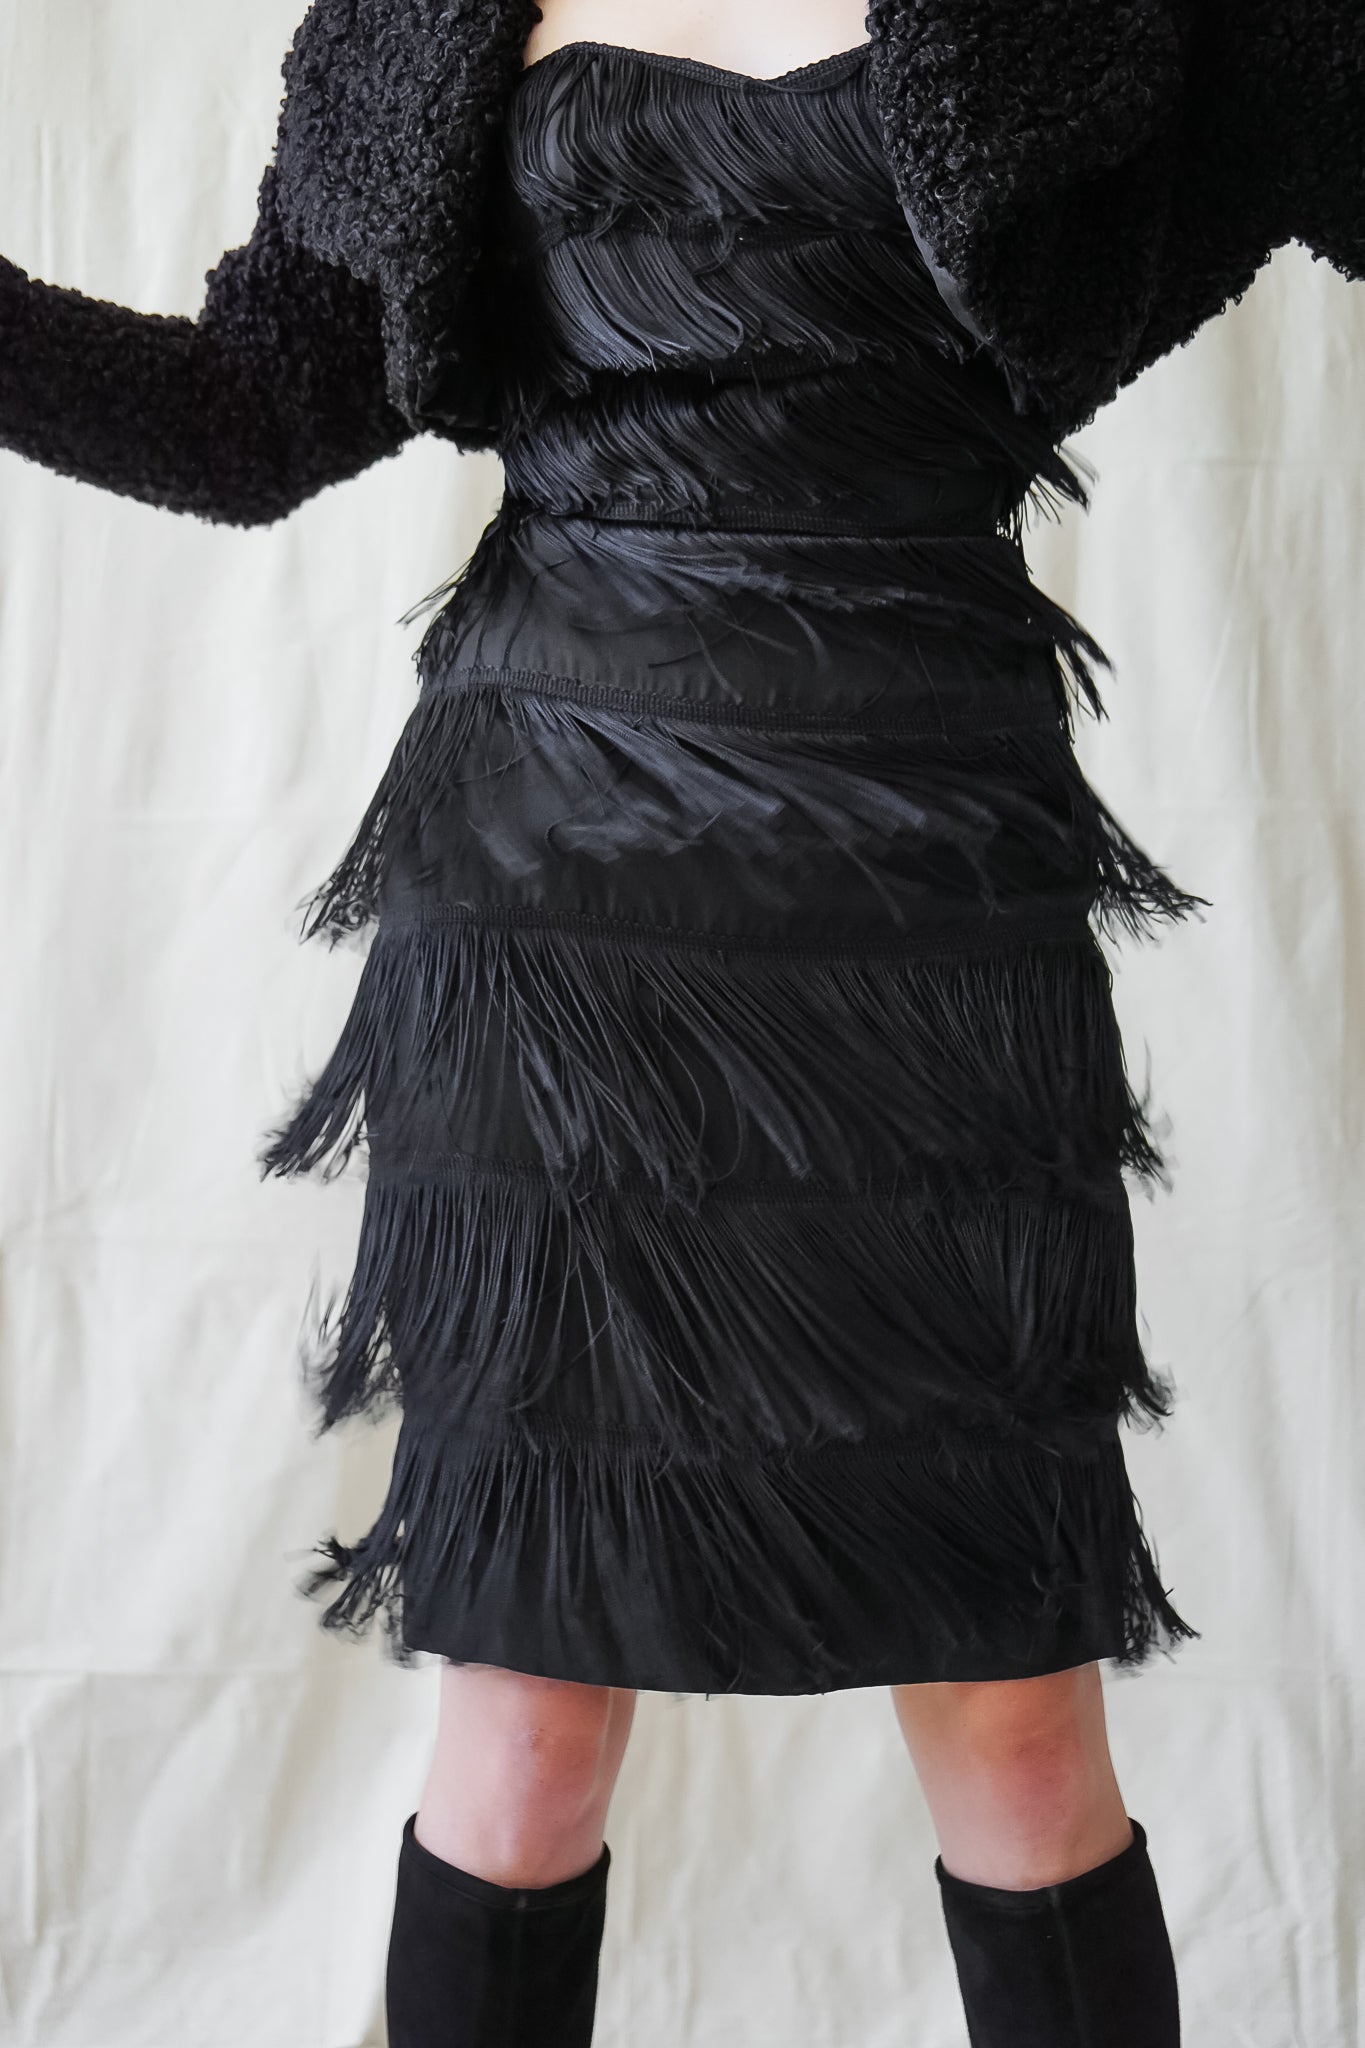 Recess Vintage Los Angeles Girl in Norma Kamali black fringe cocktail dress & faux fur shrug jacket